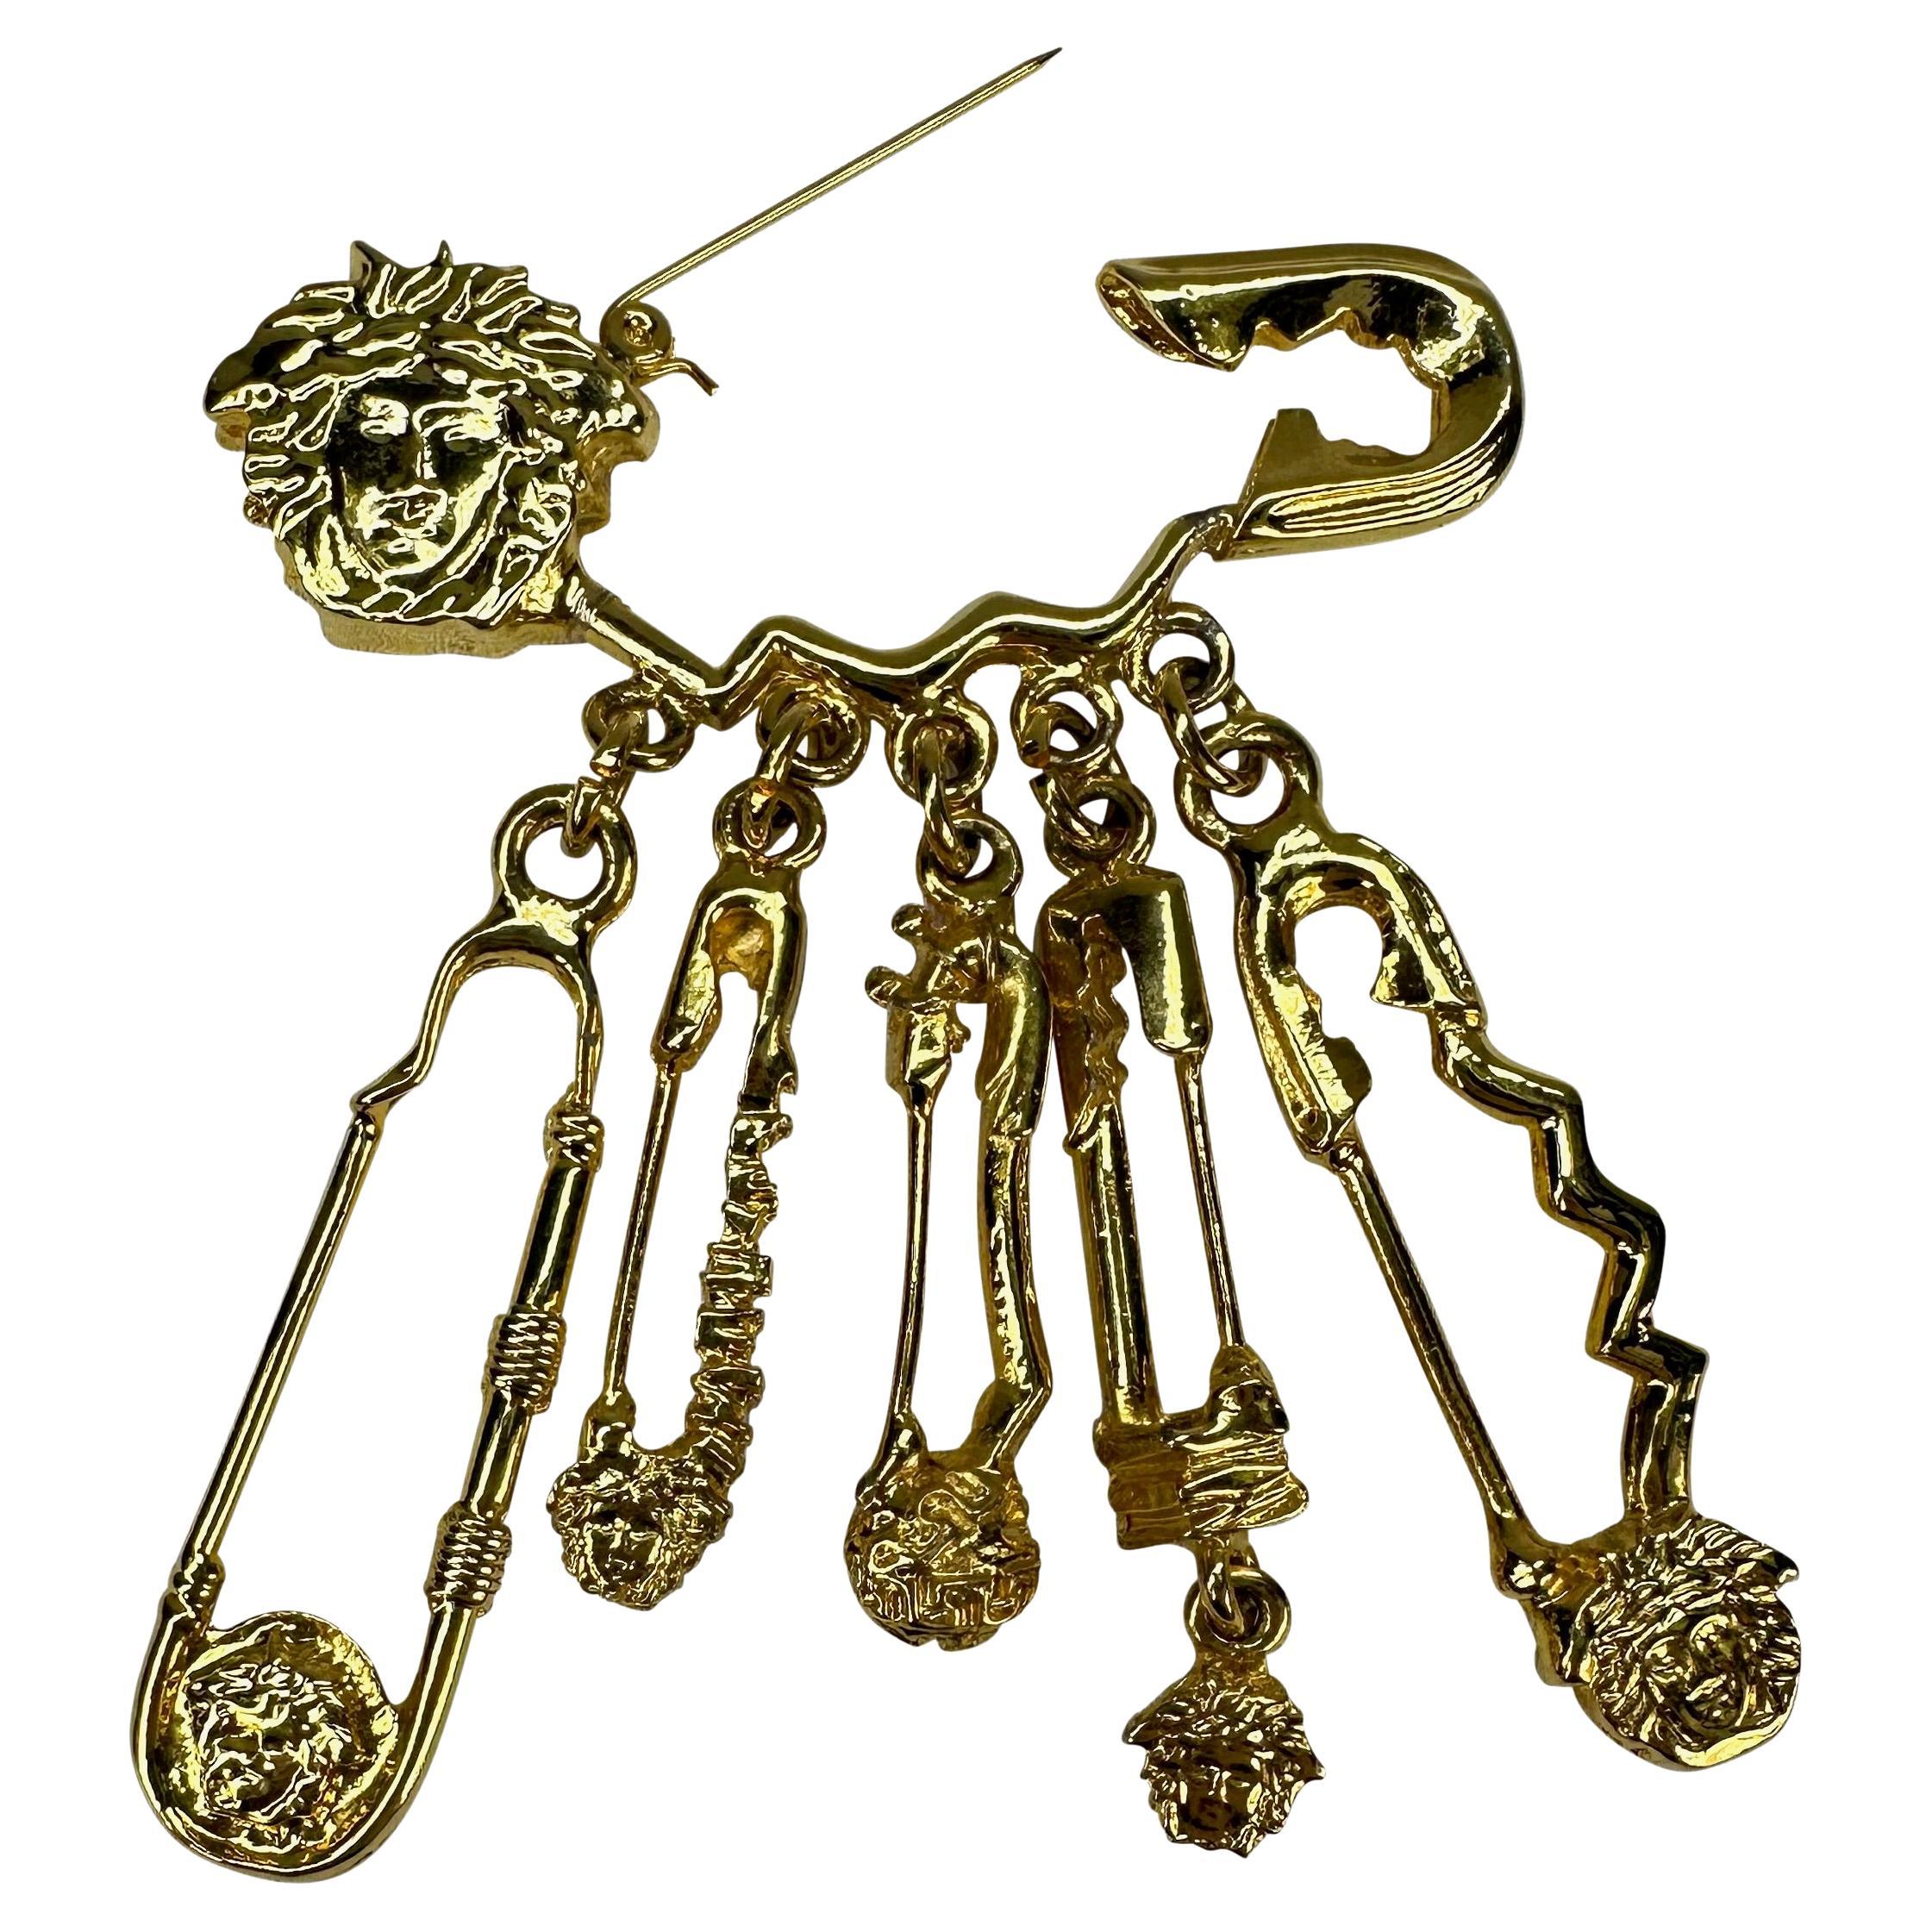 Voici une incroyable broche à épingle à nourrice Medusa de Gianni Versace en métal doré, conçue par Gianni Versace. Issue de la collection Printemps/Été 1994, cette broche à épingle à nourrice surdimensionnée est recouverte des logos de la Méduse de